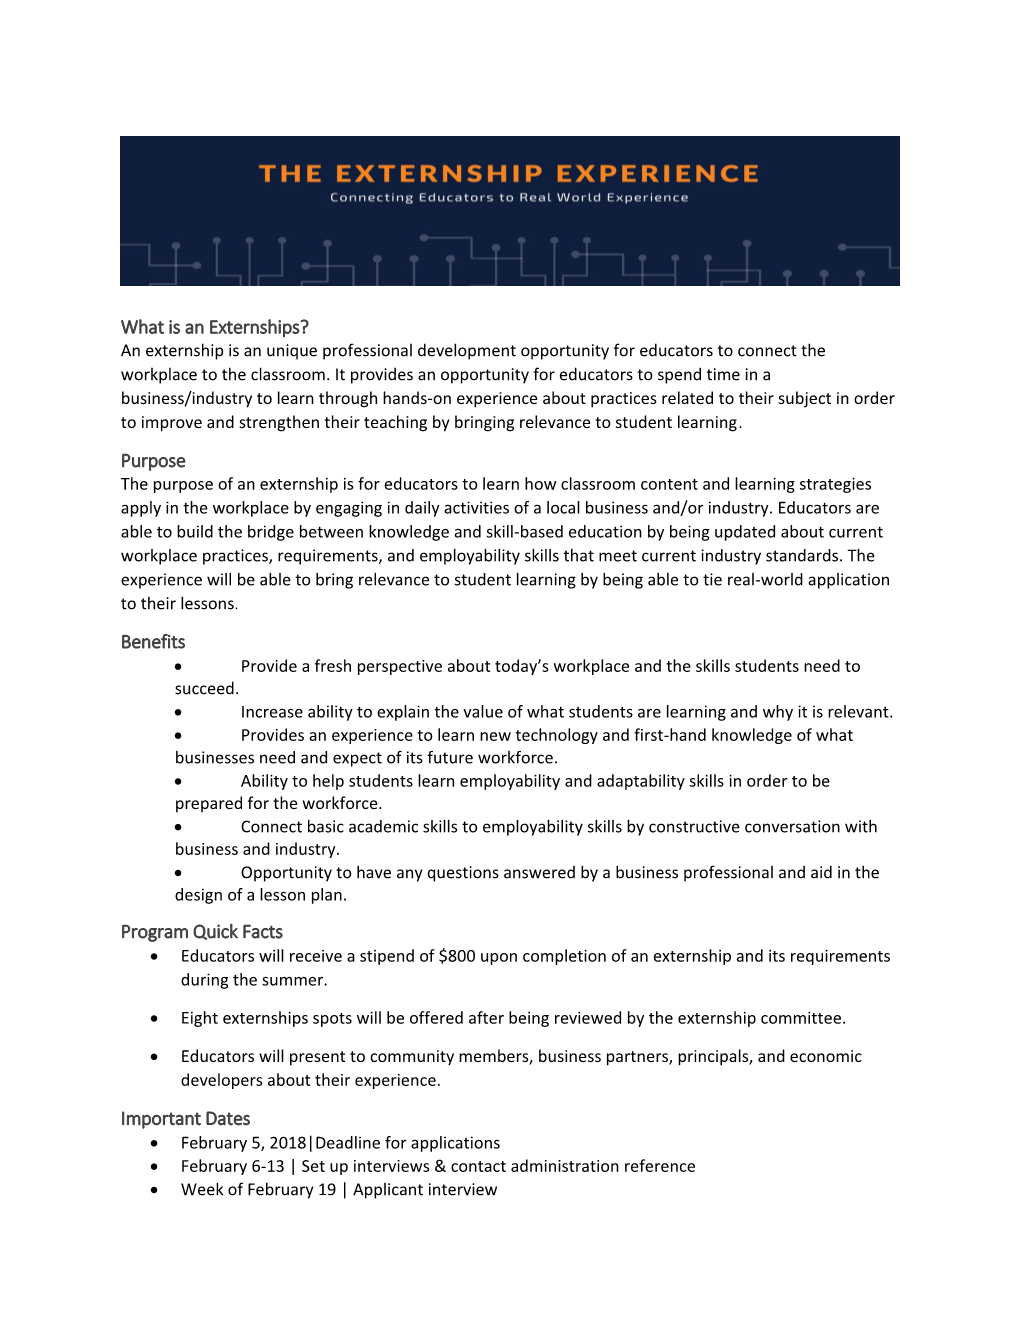 What Is an Externships?